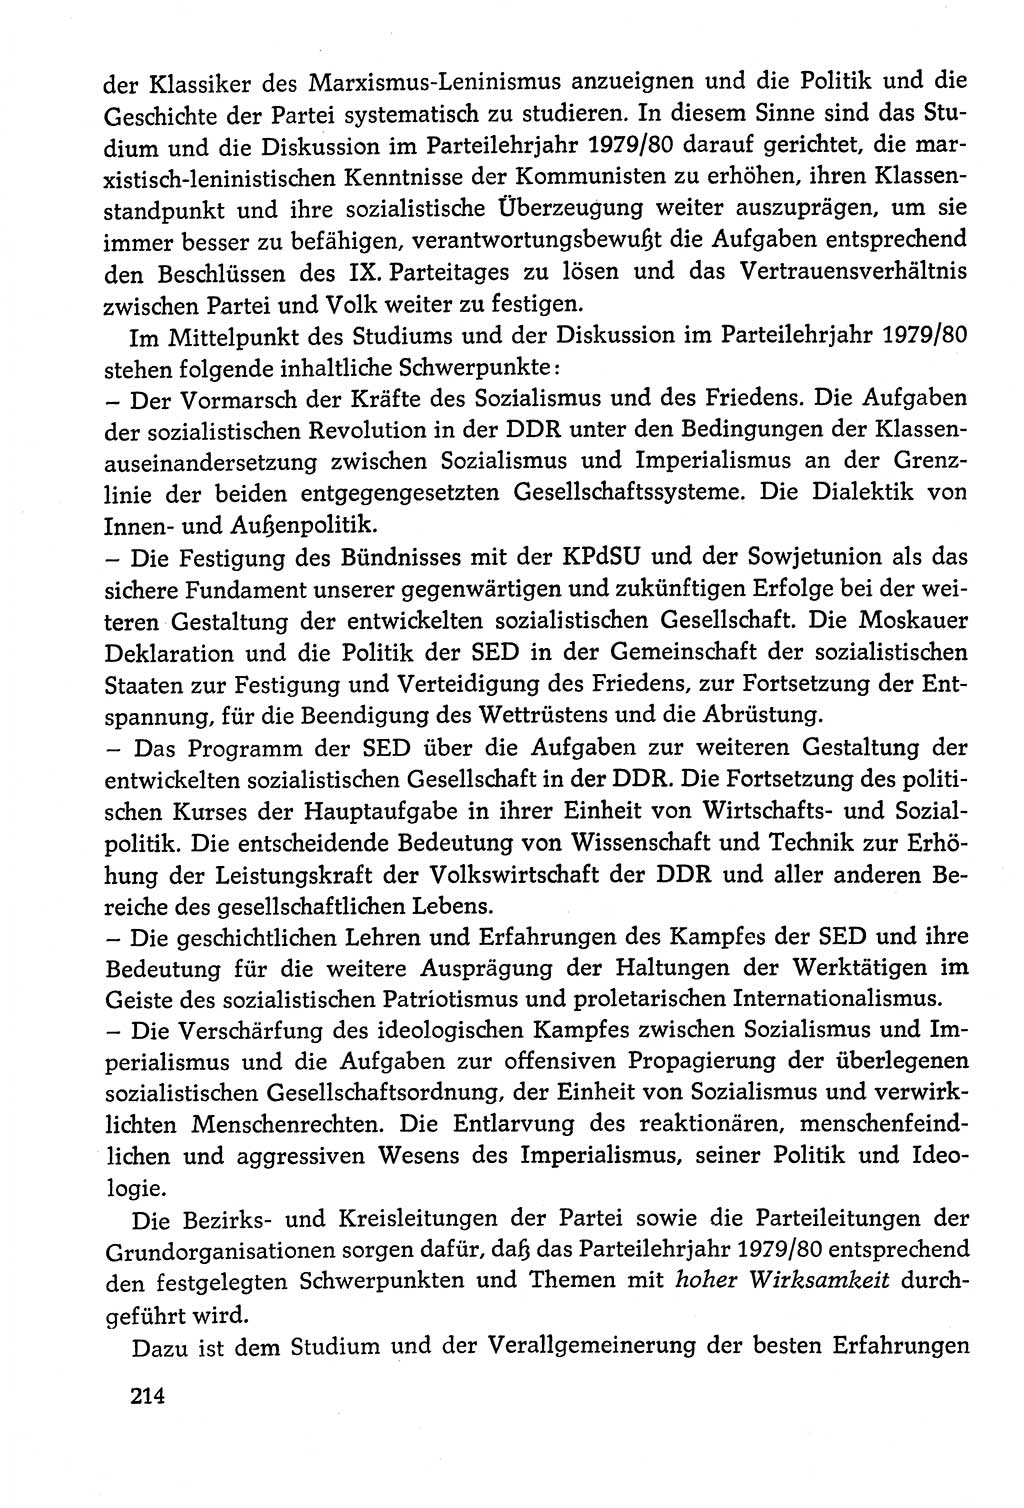 Dokumente der Sozialistischen Einheitspartei Deutschlands (SED) [Deutsche Demokratische Republik (DDR)] 1978-1979, Seite 214 (Dok. SED DDR 1978-1979, S. 214)